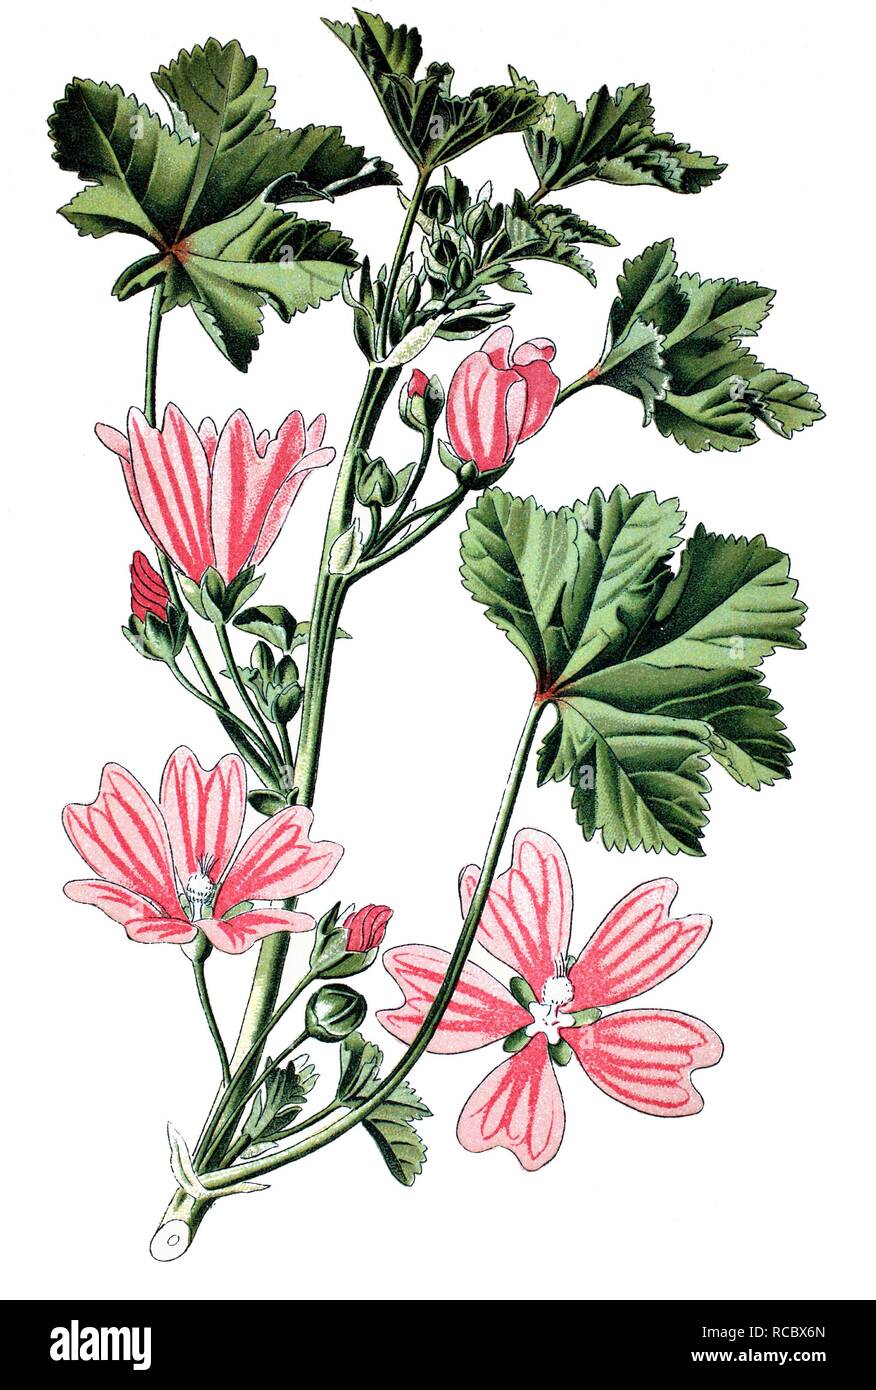 Common mallow (Malva sylvestris), medicinal plant, historical chromolithography, 1870 Stock Photo